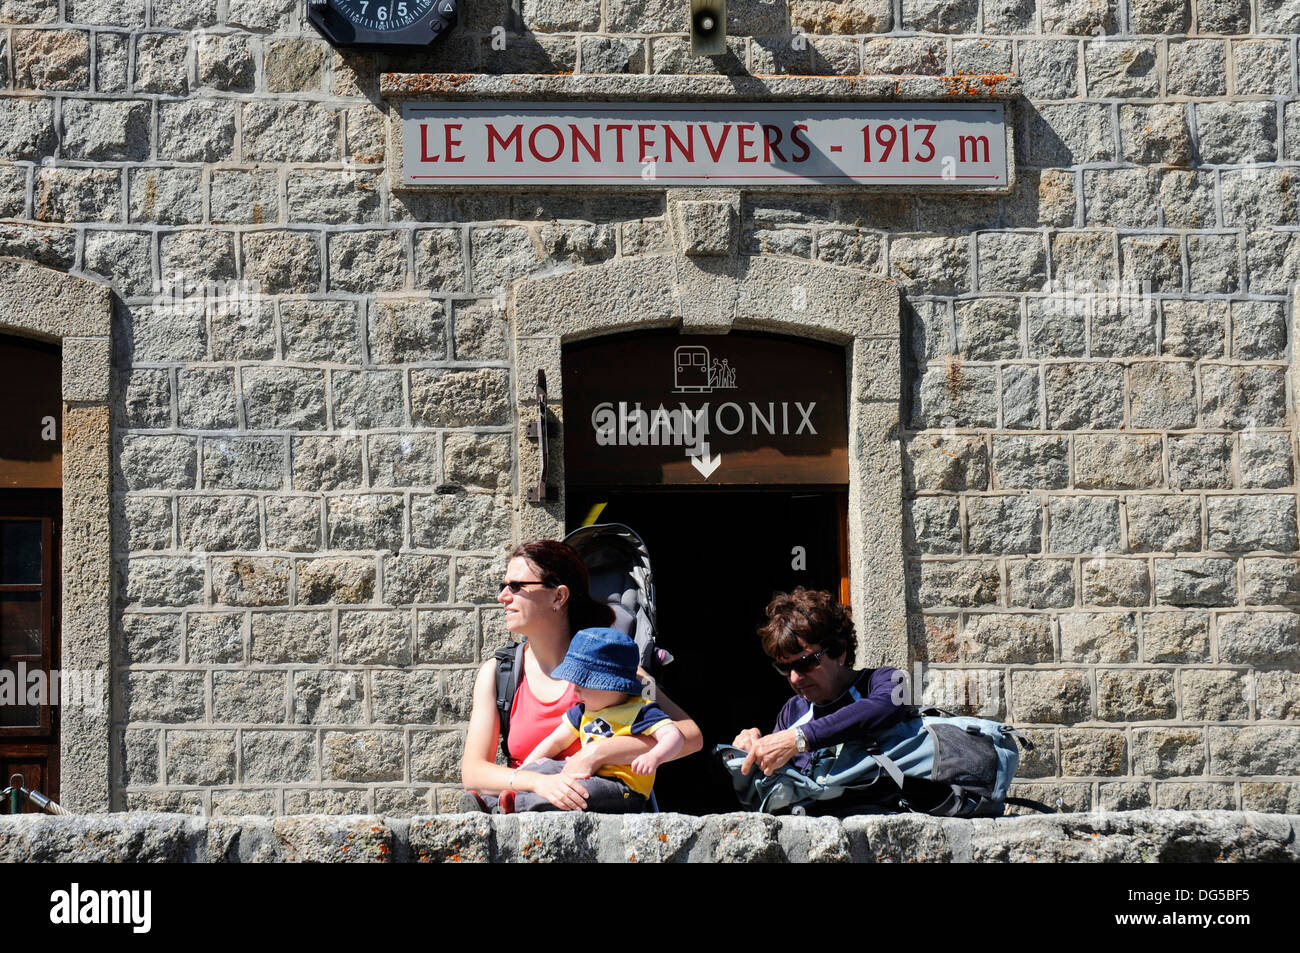 La station de funiculaire du Montenvers, Chamonix, France Banque D'Images